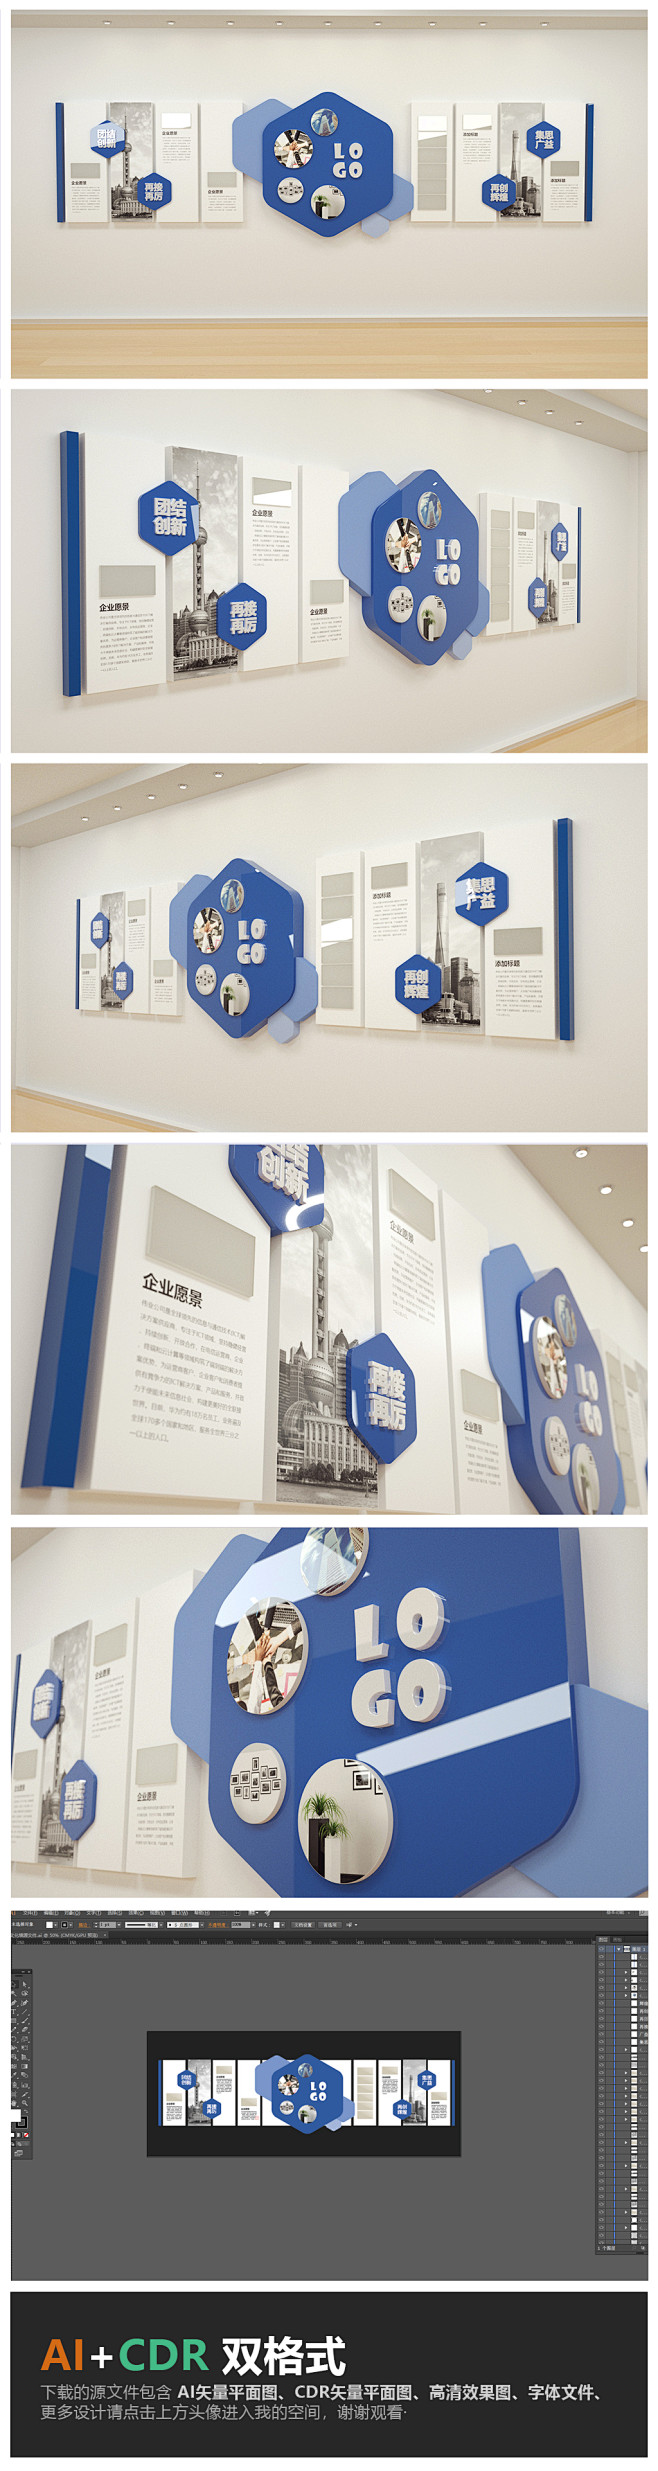 高档蓝色科技企业文化墙公司形象墙设计模板